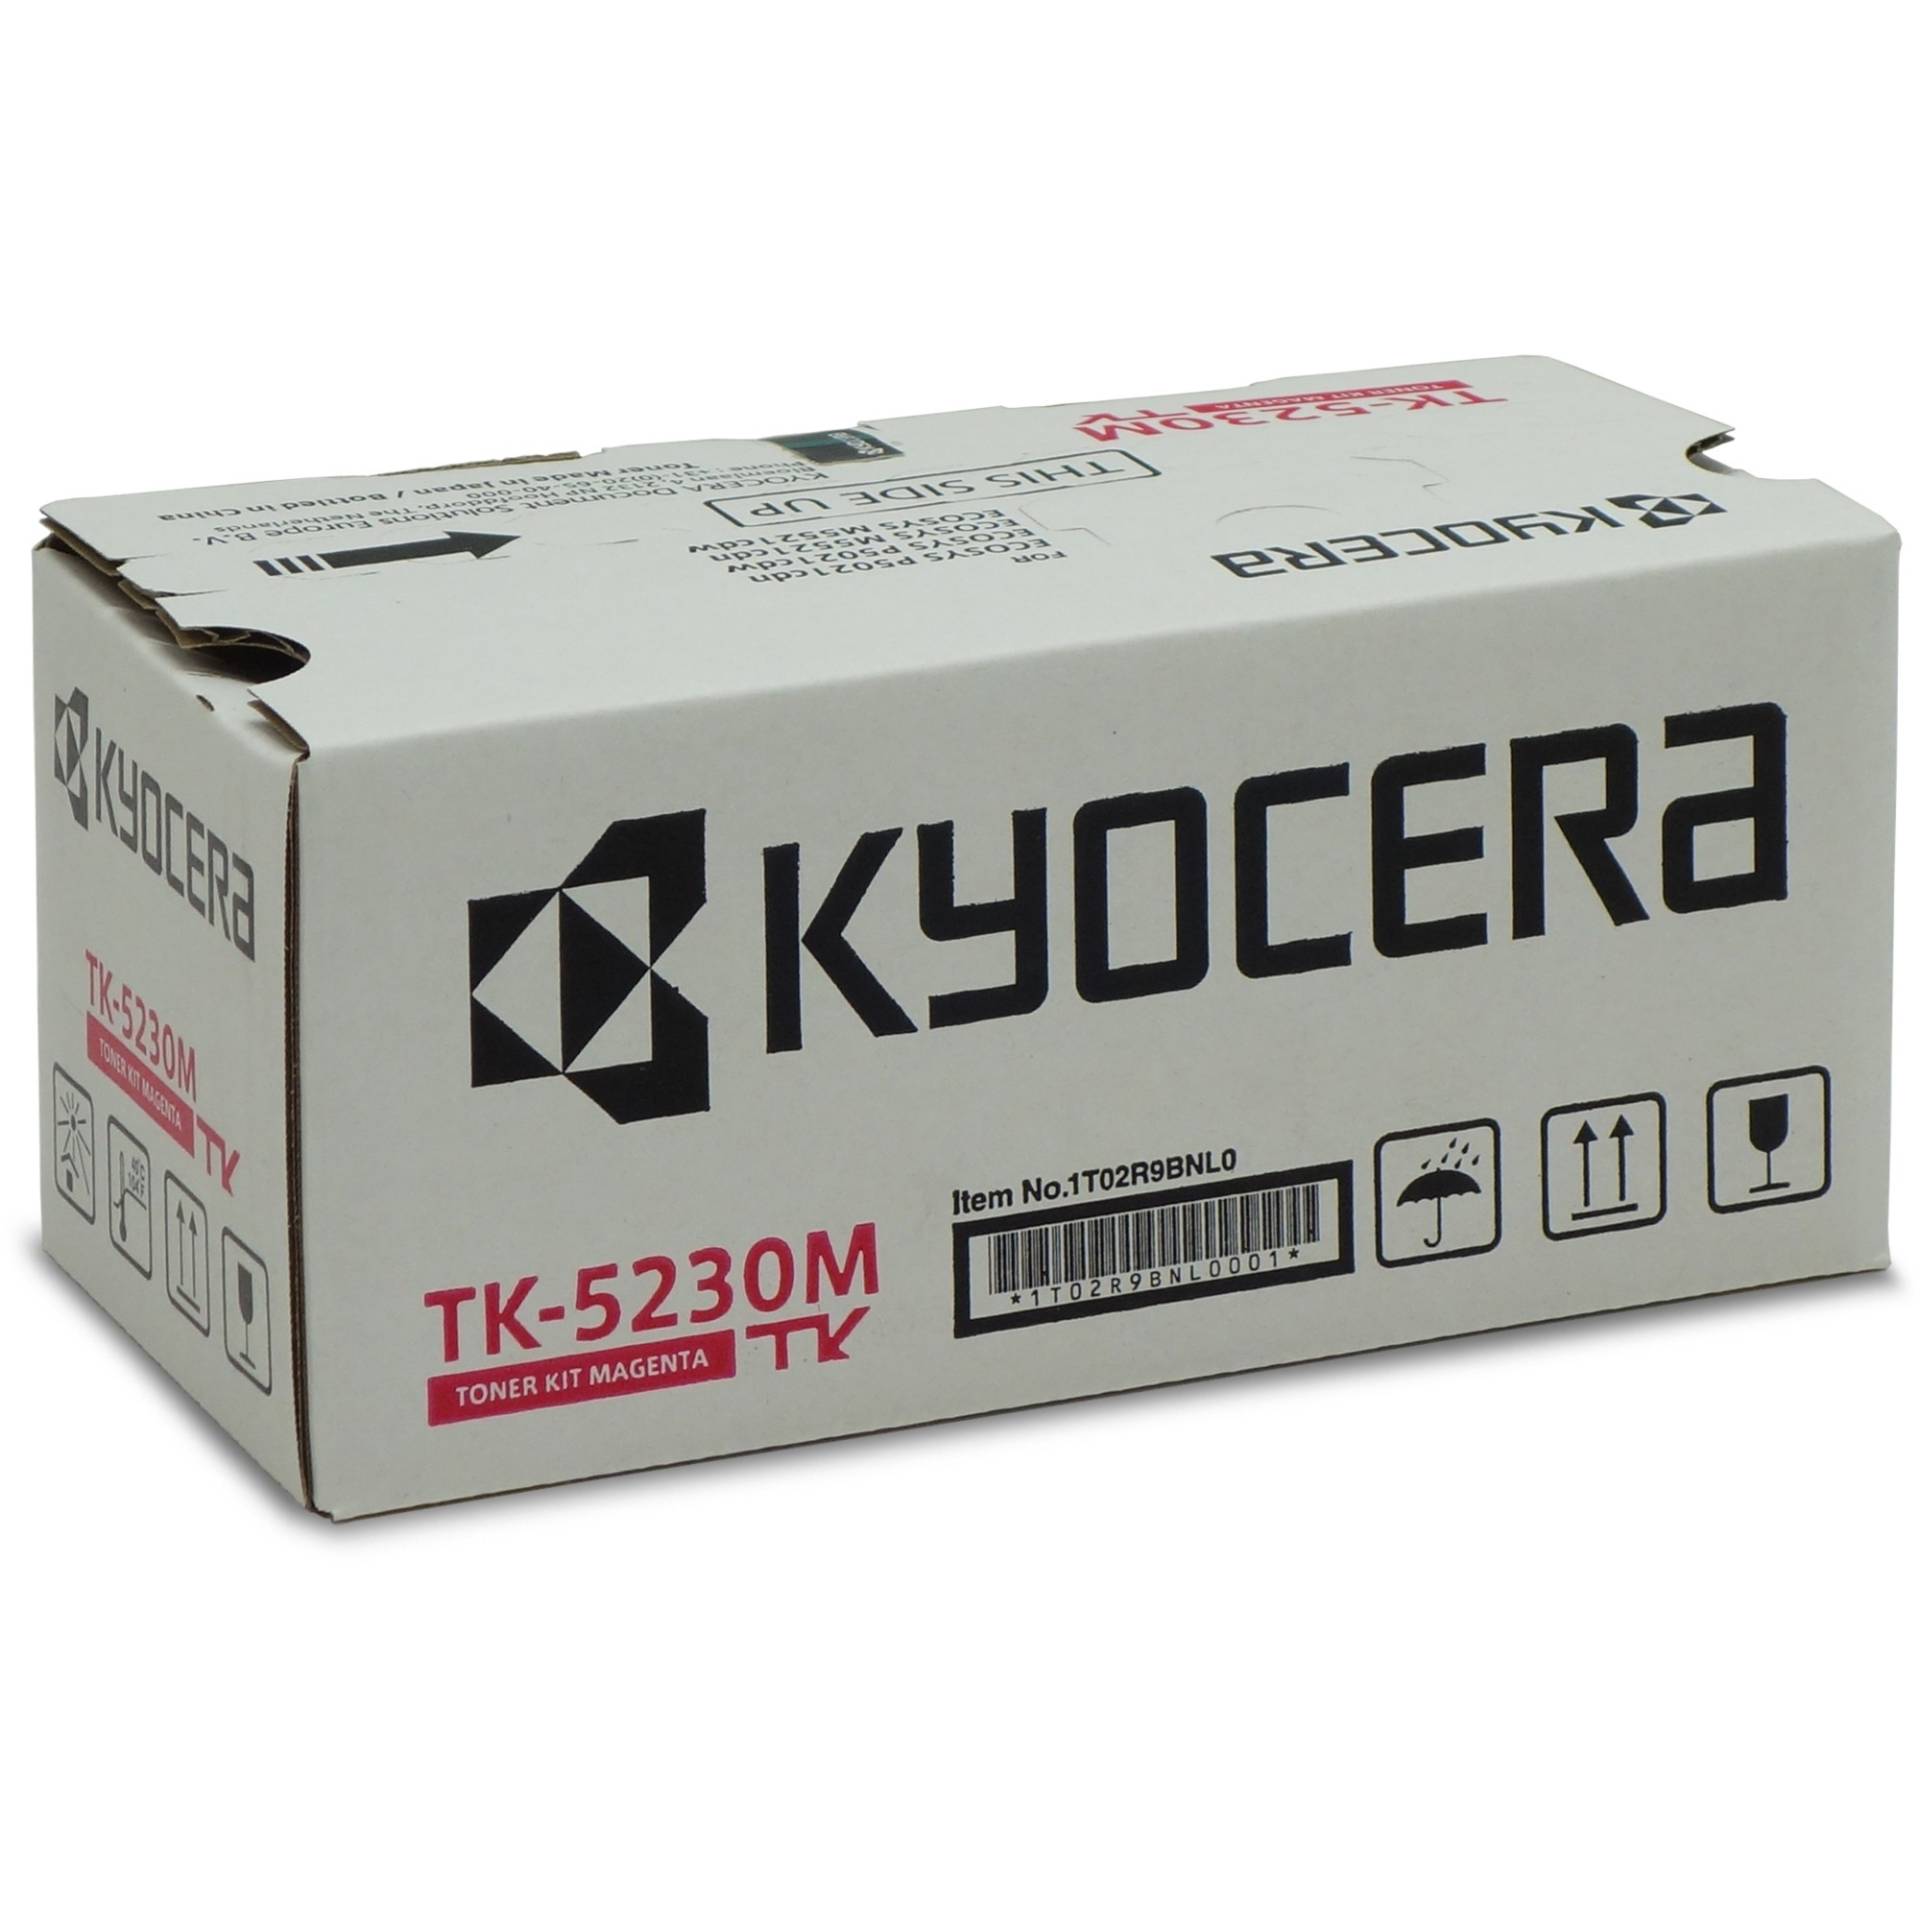 Toner magenta TK-5230M von Kyocera